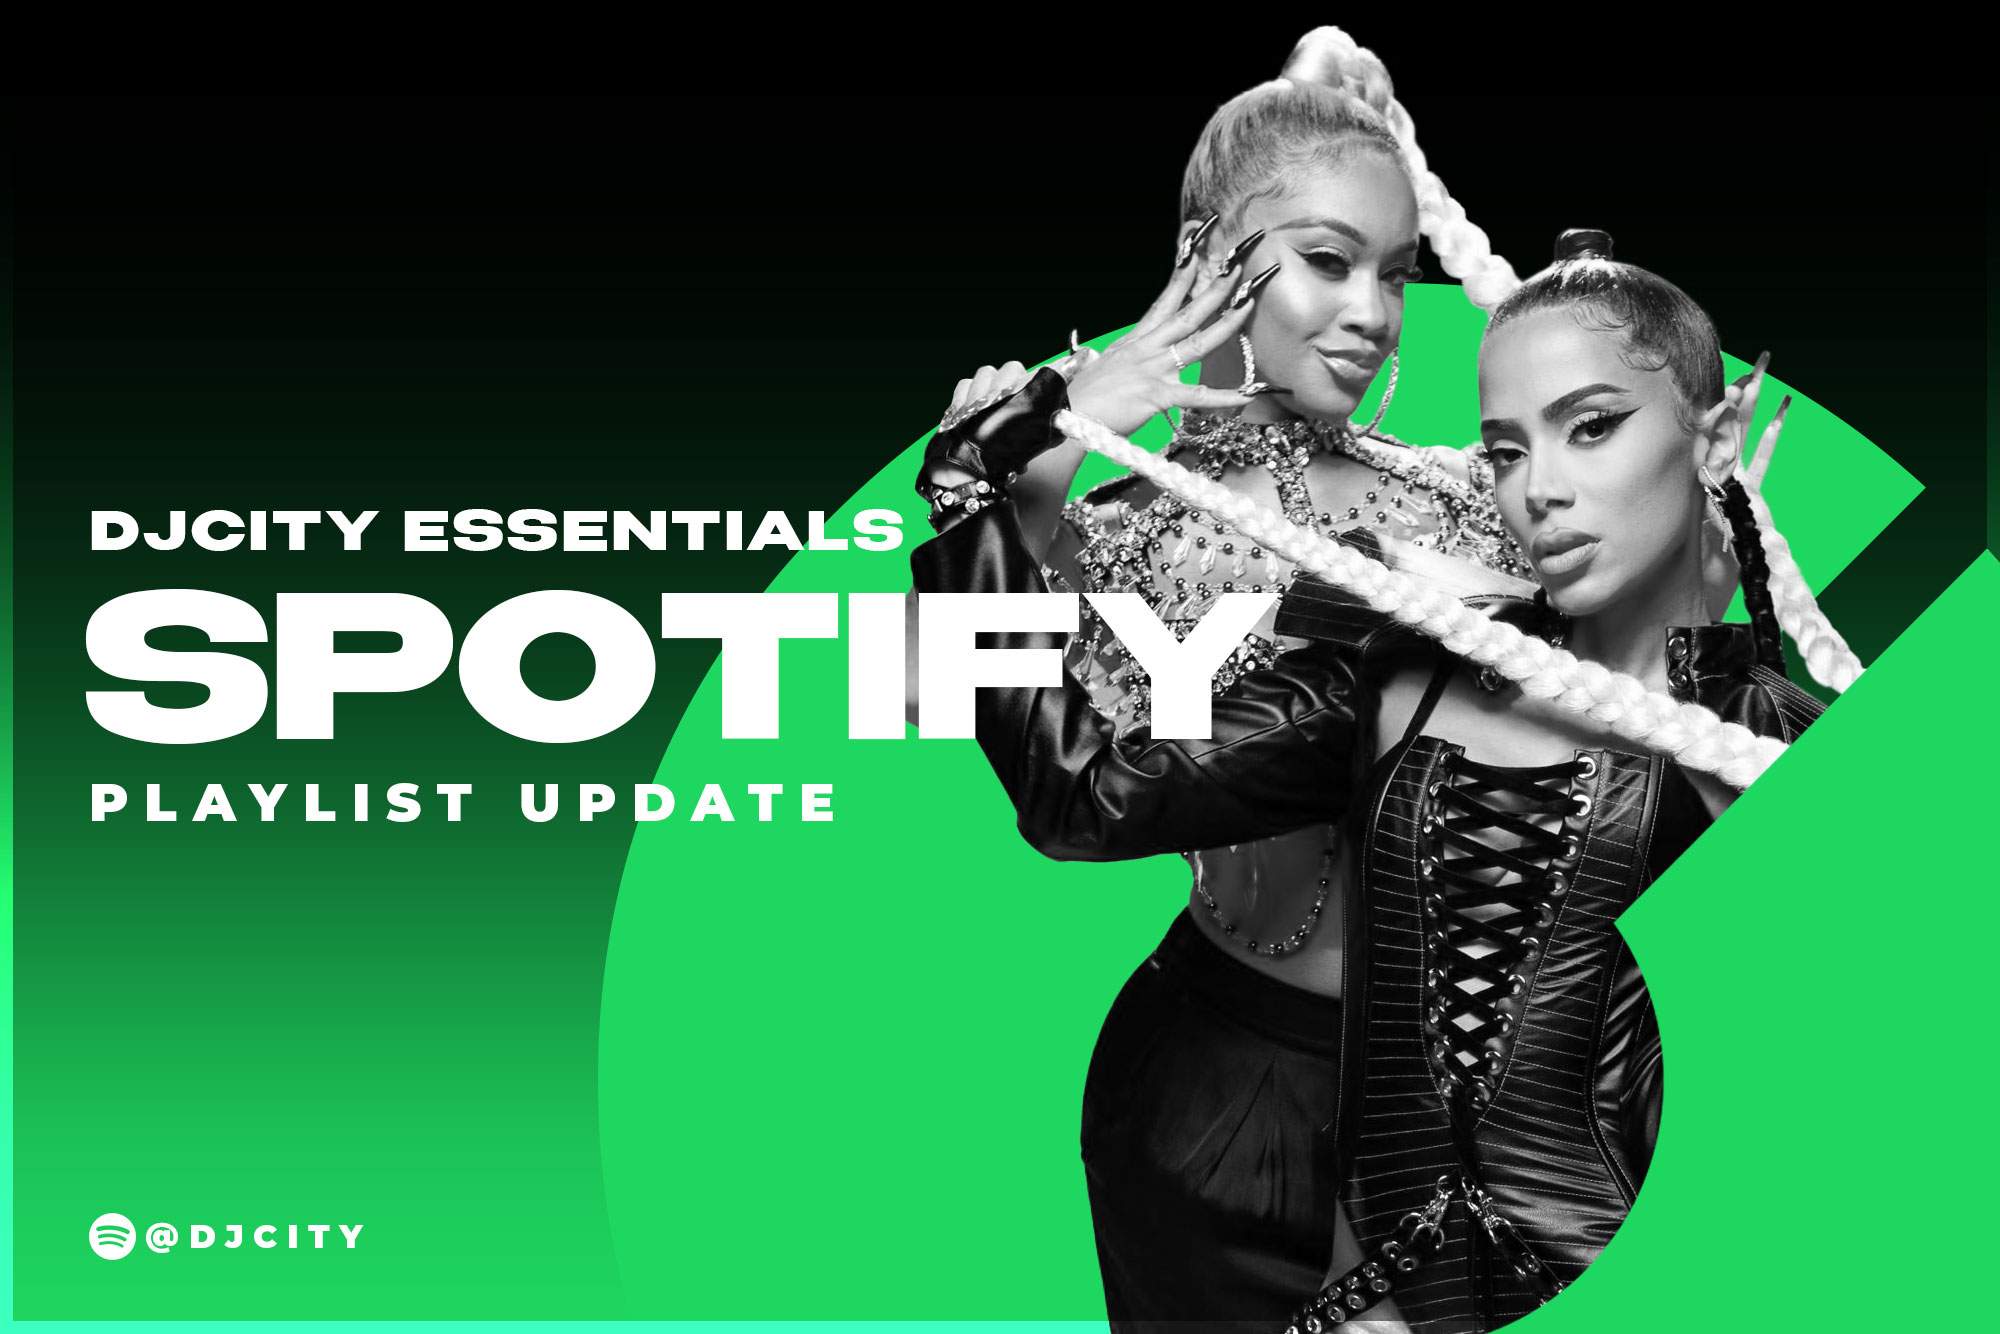 DJcity’s Spotify Playlist Update: Oct. 19